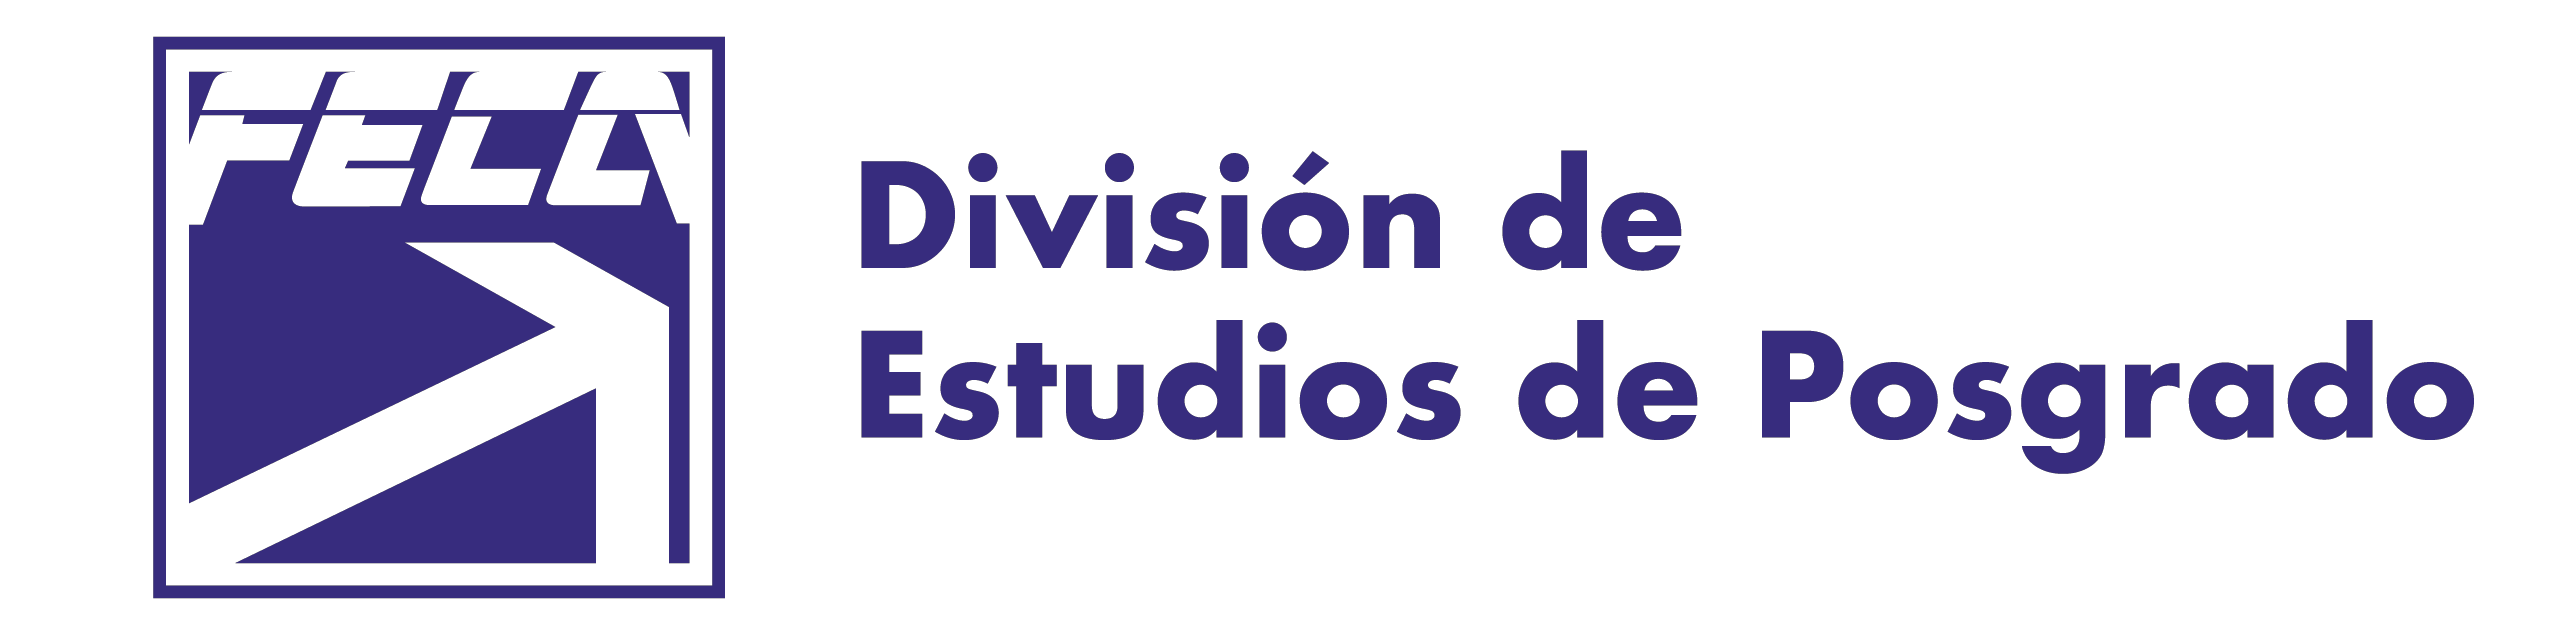 División de Estudios de Posgrado FECA UJED Logotipo